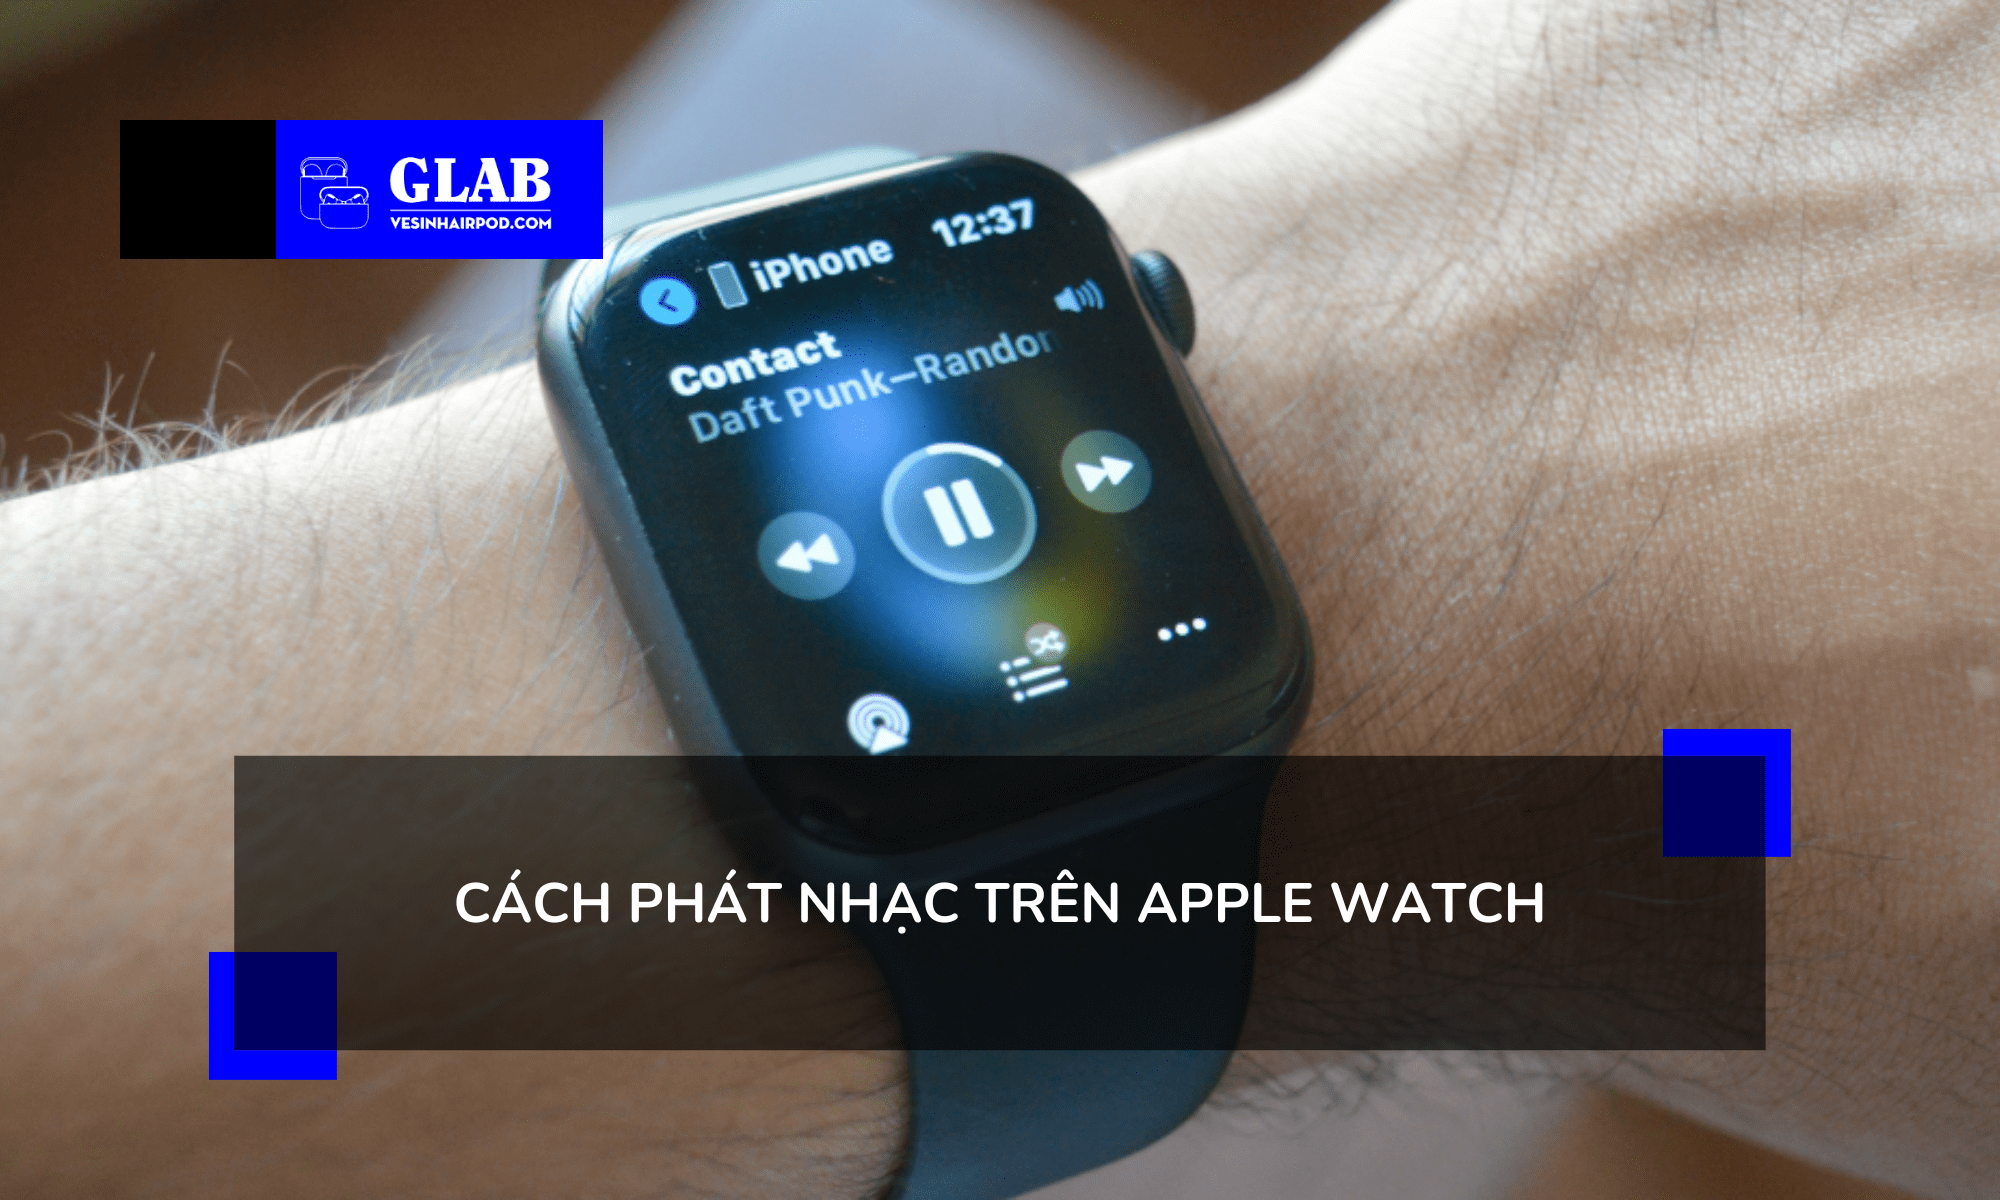 cach-phat-nhac-tren-apple-watch